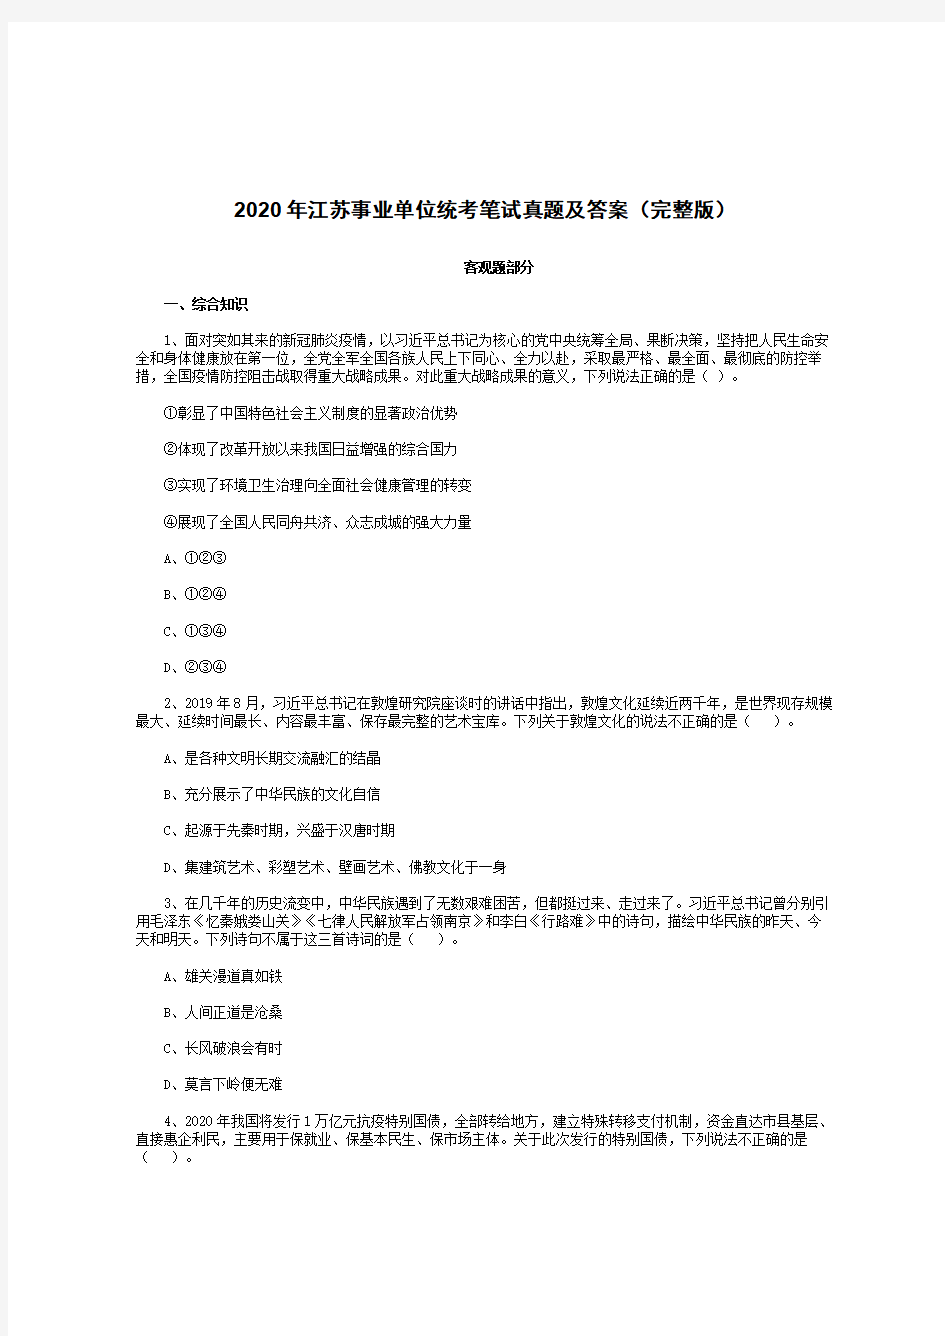 2020年江苏事业单位统考笔试真题及答案(完整版)